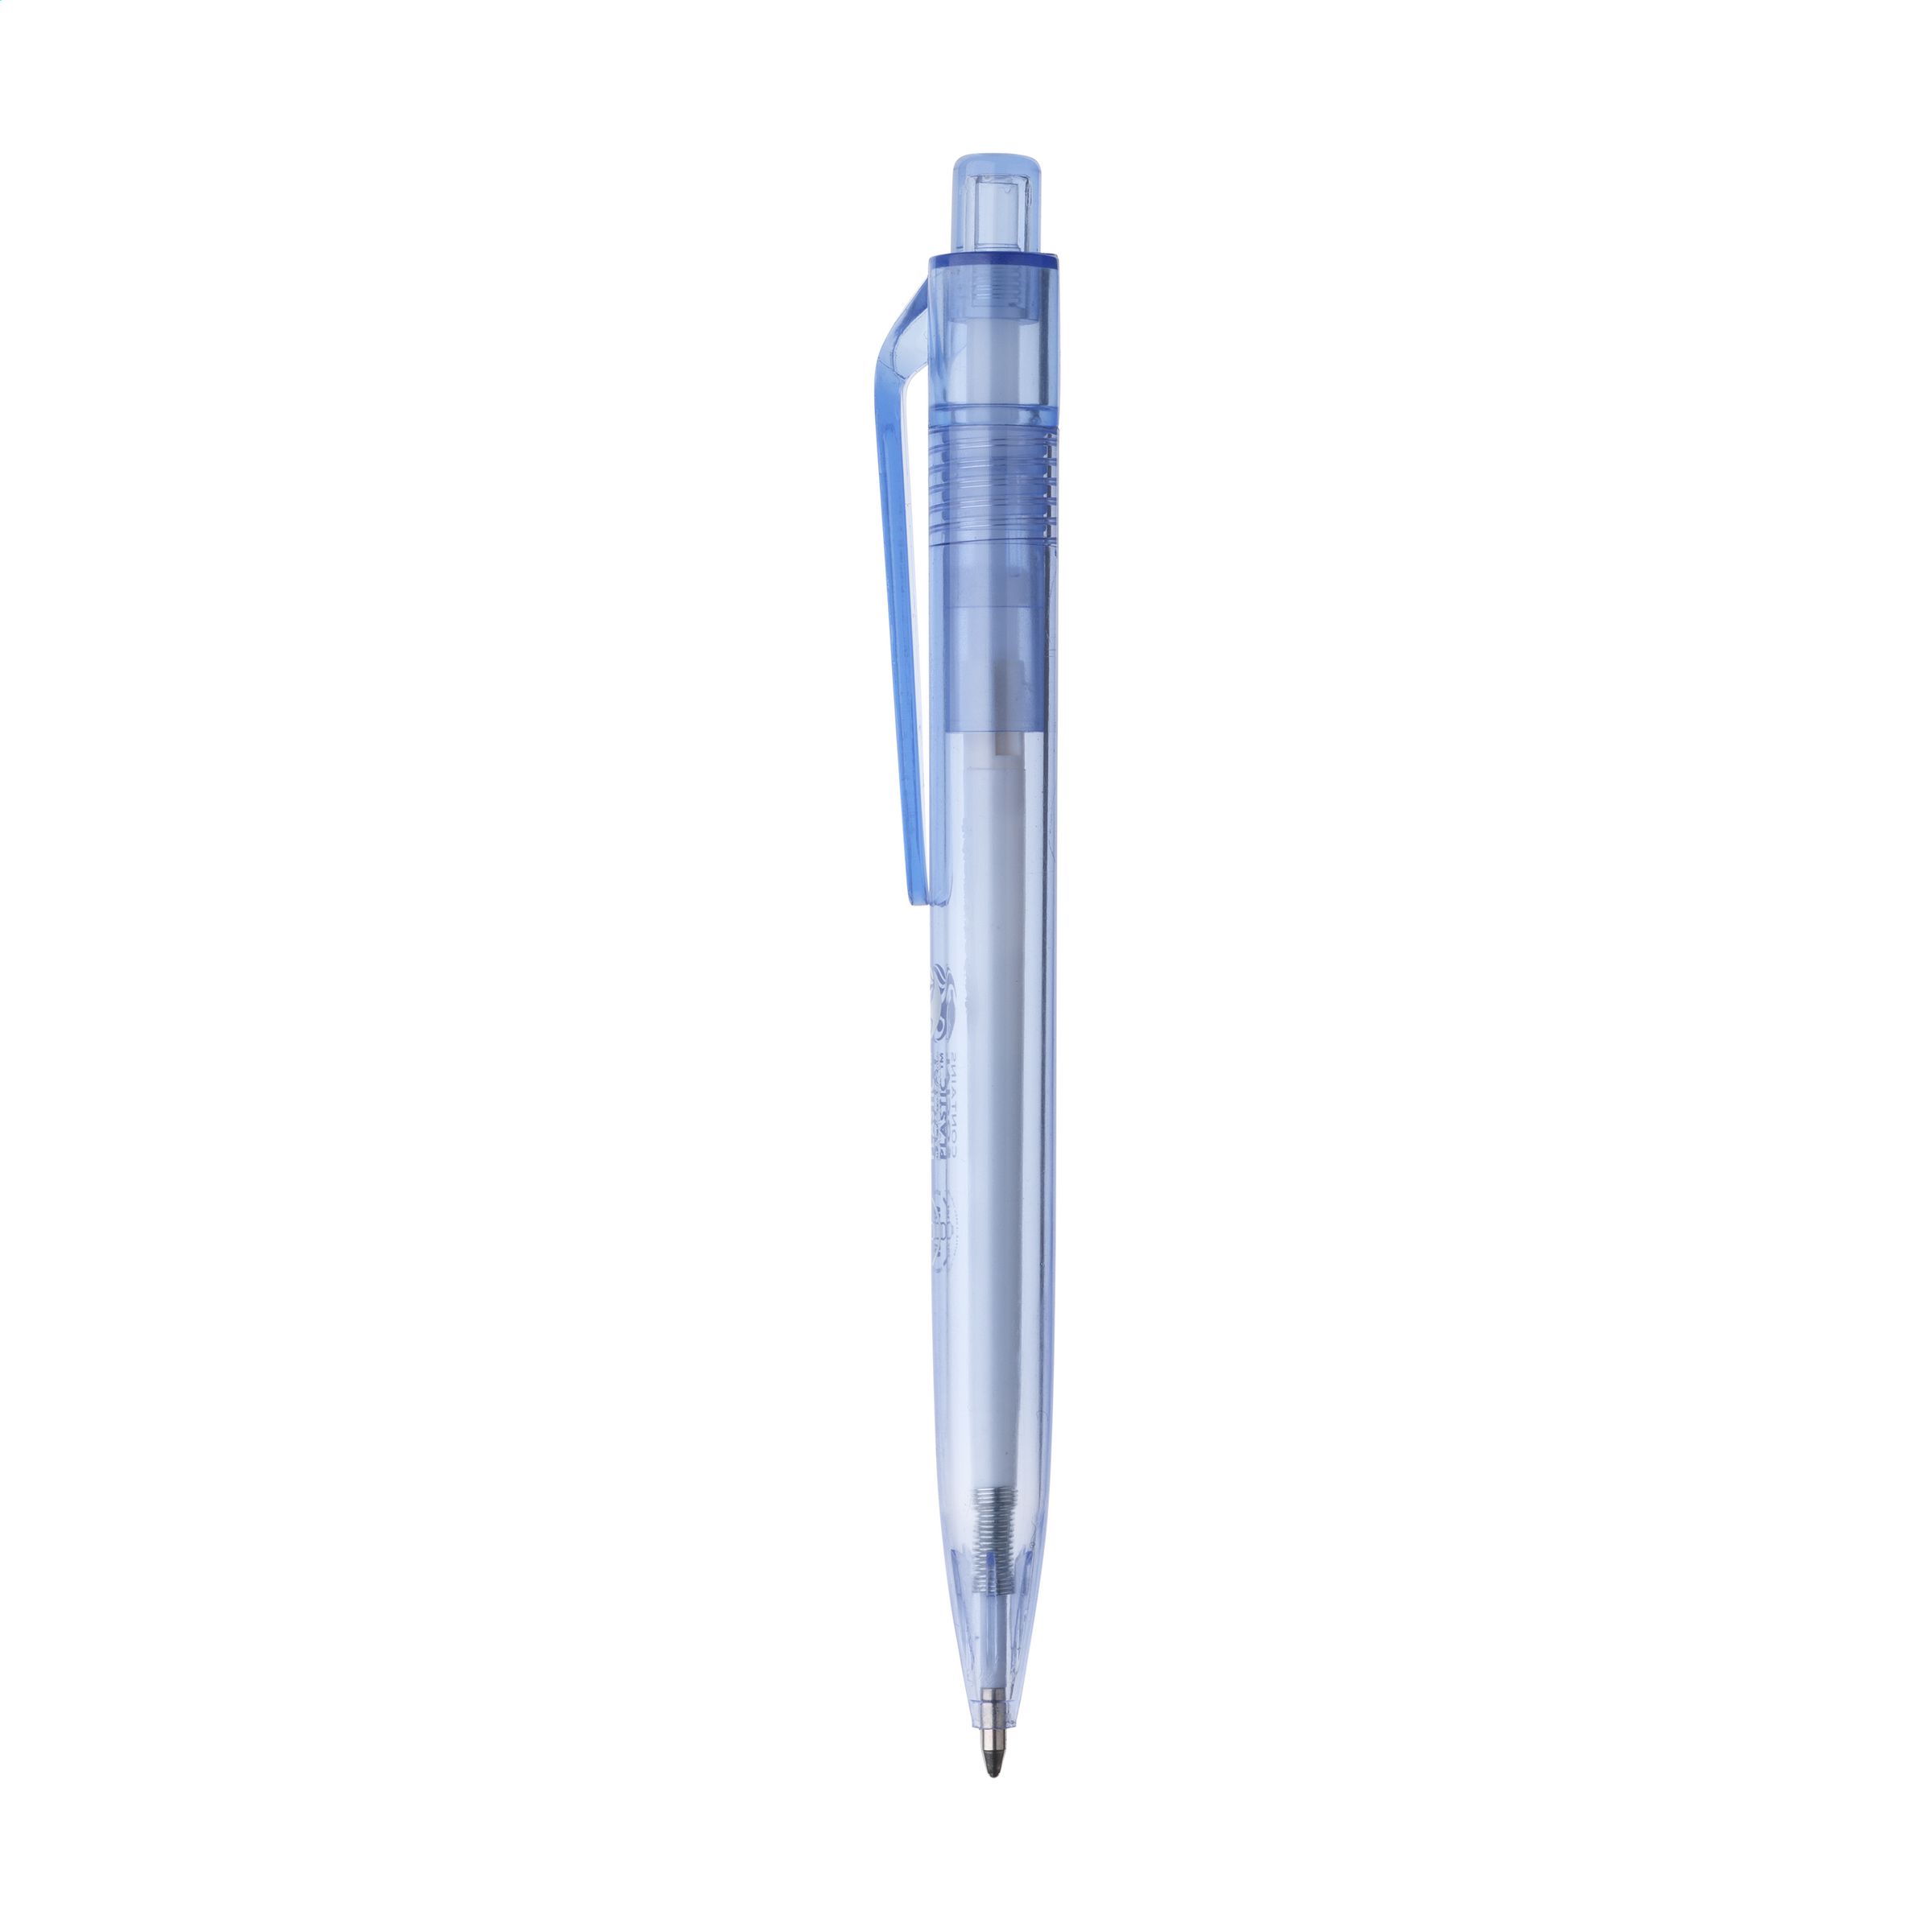 vuist Interpersoonlijk Grap RPET Big Clip Pen pennen bedrukken? - Voordelig & snel bestellen